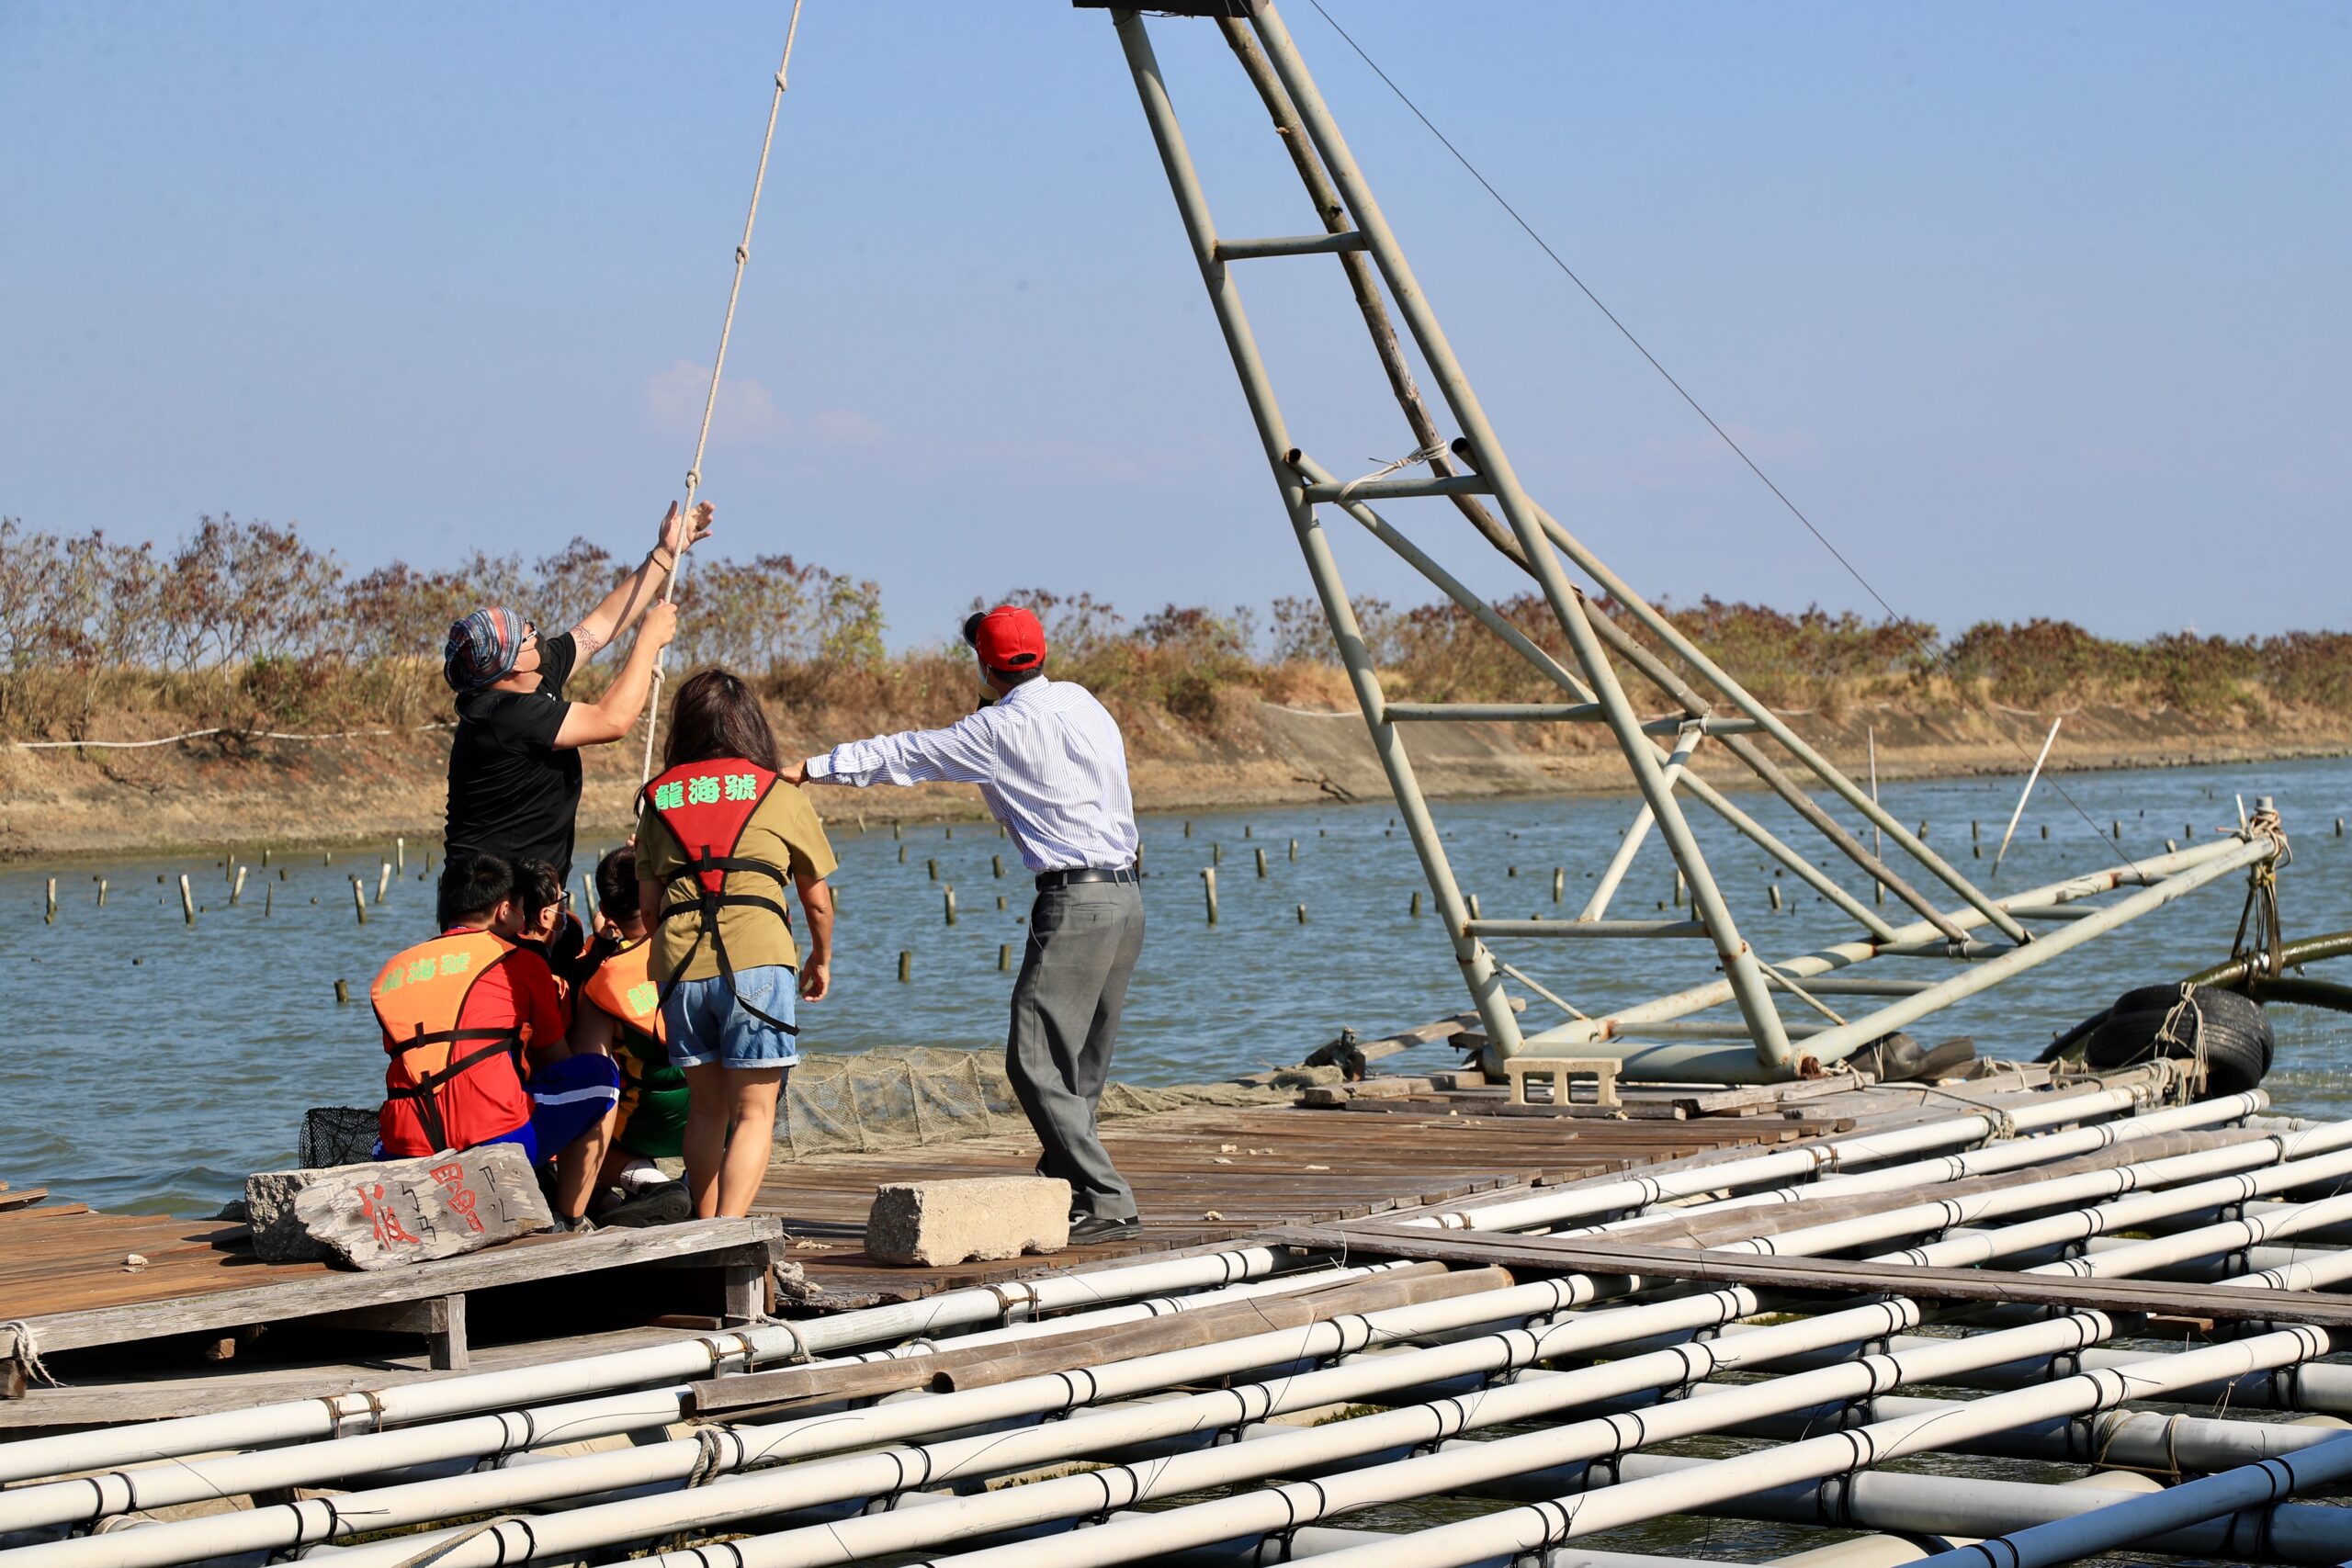 005台南七股龍海號會帶領遊客體驗潟湖內的定置漁網捕魚方法001